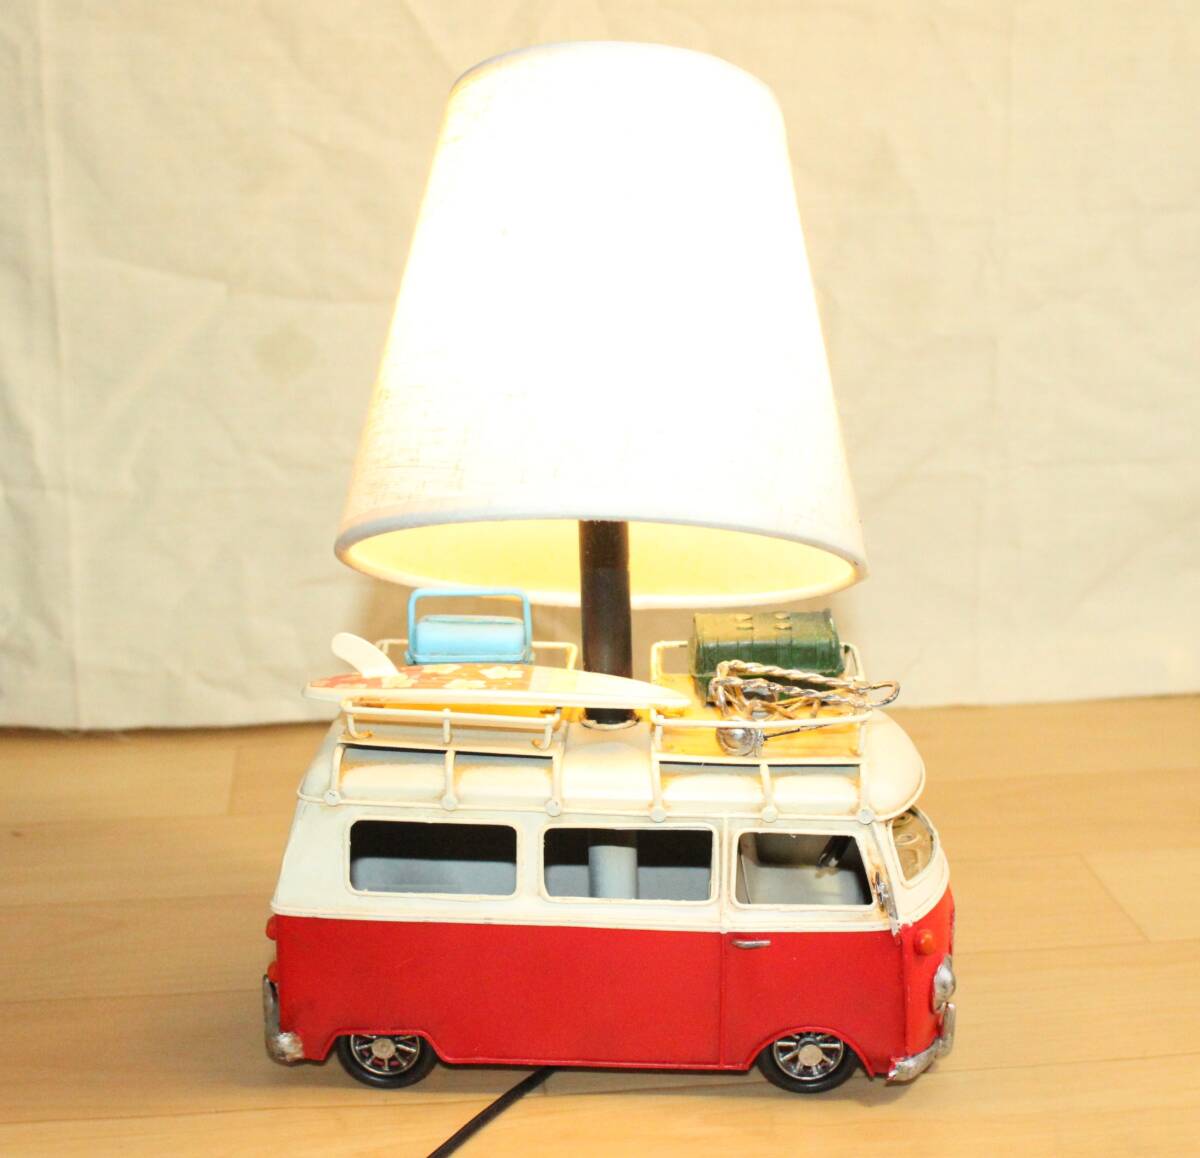  Volkswagen автобус настольный свет жестяная пластина игрушка способ 